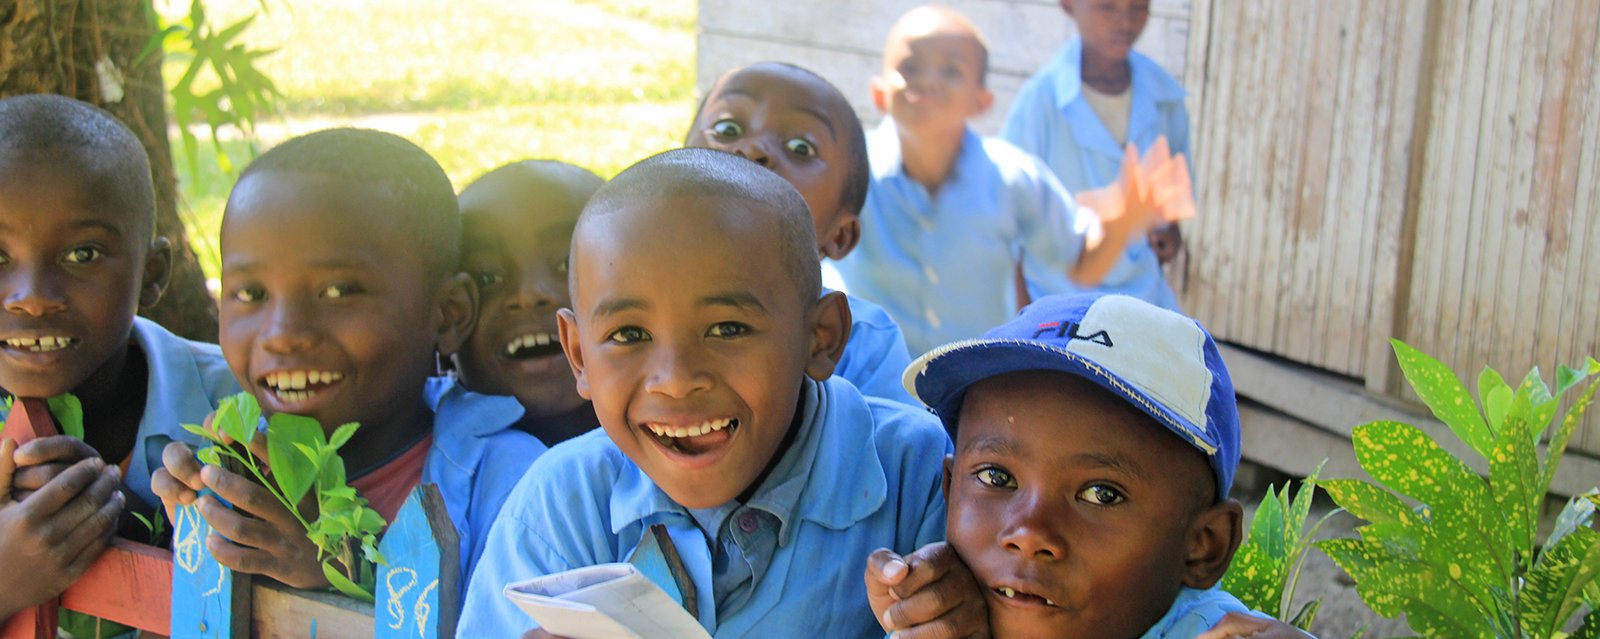 Kinder in Schuluniform im Schulgarten mit breitem Grinsen im Gesicht - glücklich in die Schule zu dürfen